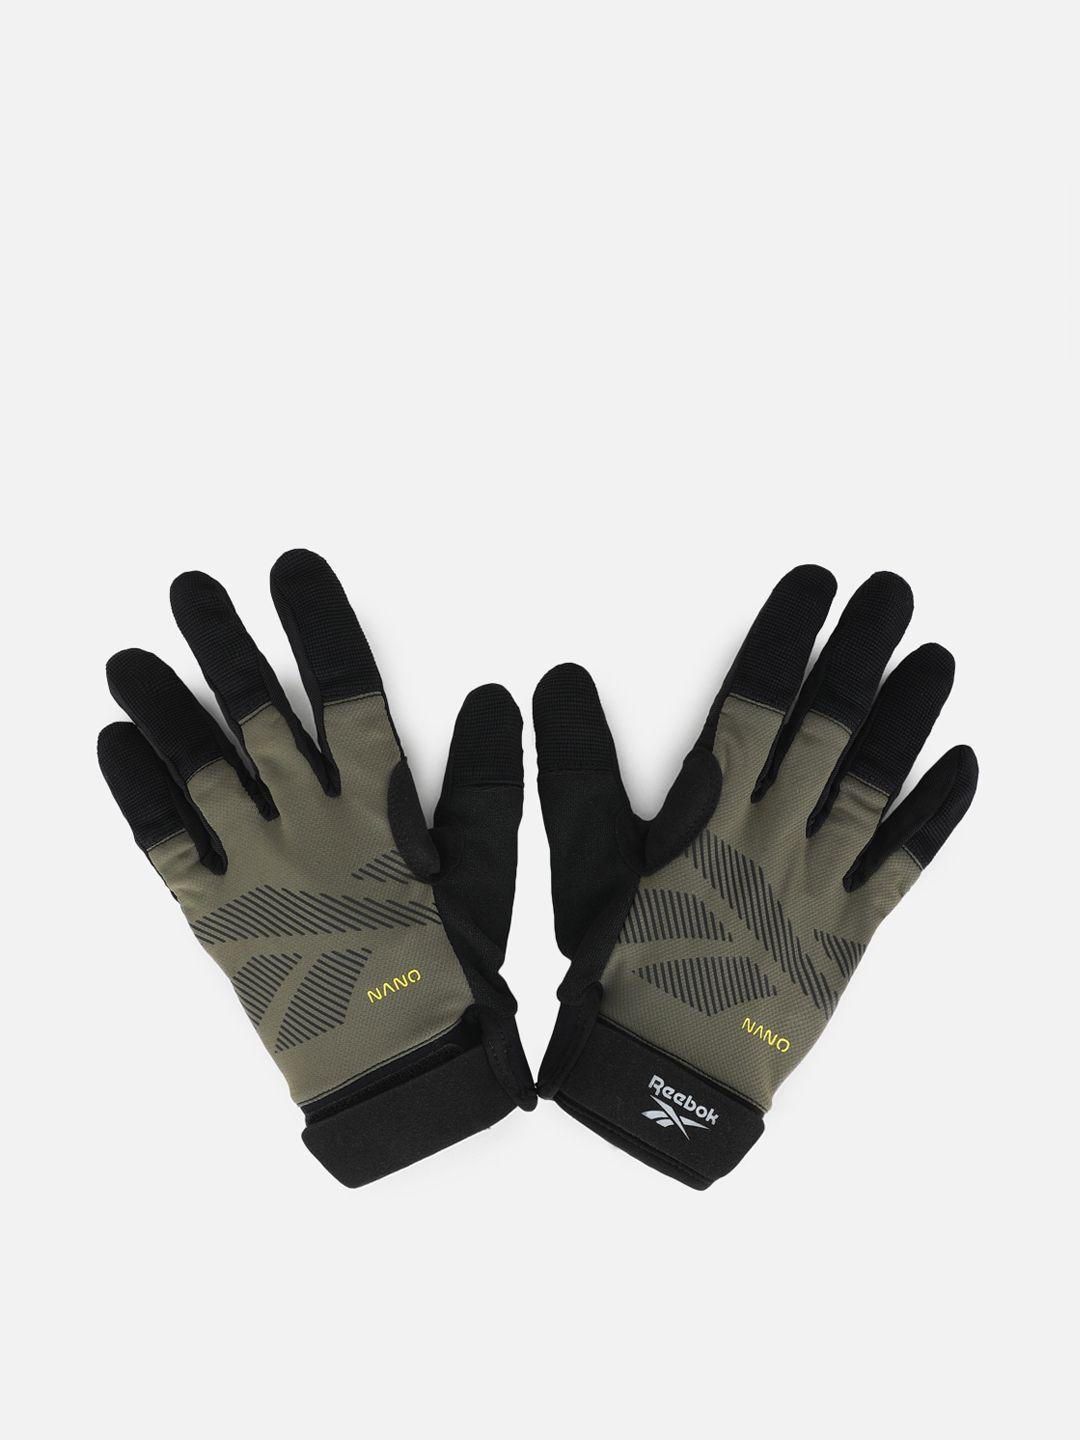 reebok-men-ubf-athlete-series-logo-printed-gloves